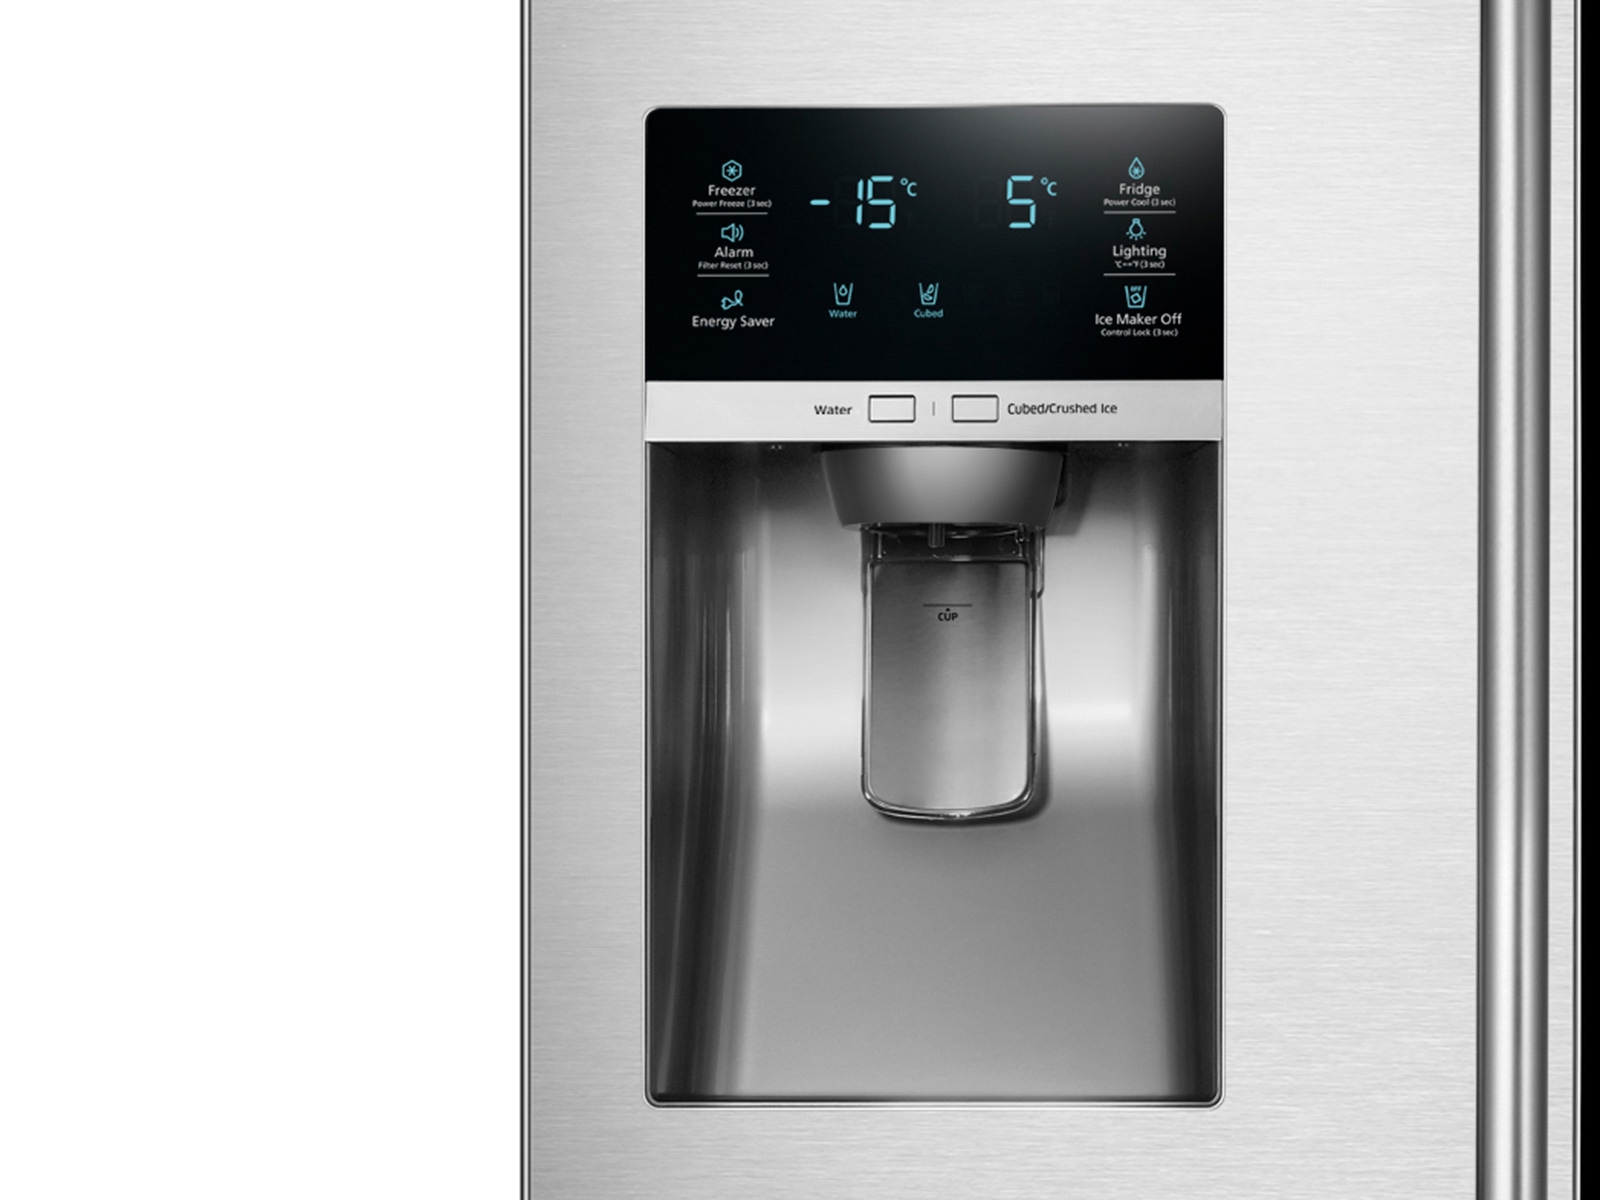 https://image-us.samsung.com/SamsungUS/home/home-appliances/refrigerators/all/pdp/rf28hdedtsr/09_RF28HDEDTSR_001_Front_Control_Dispenser_Silver.jpg?$product-details-jpg$